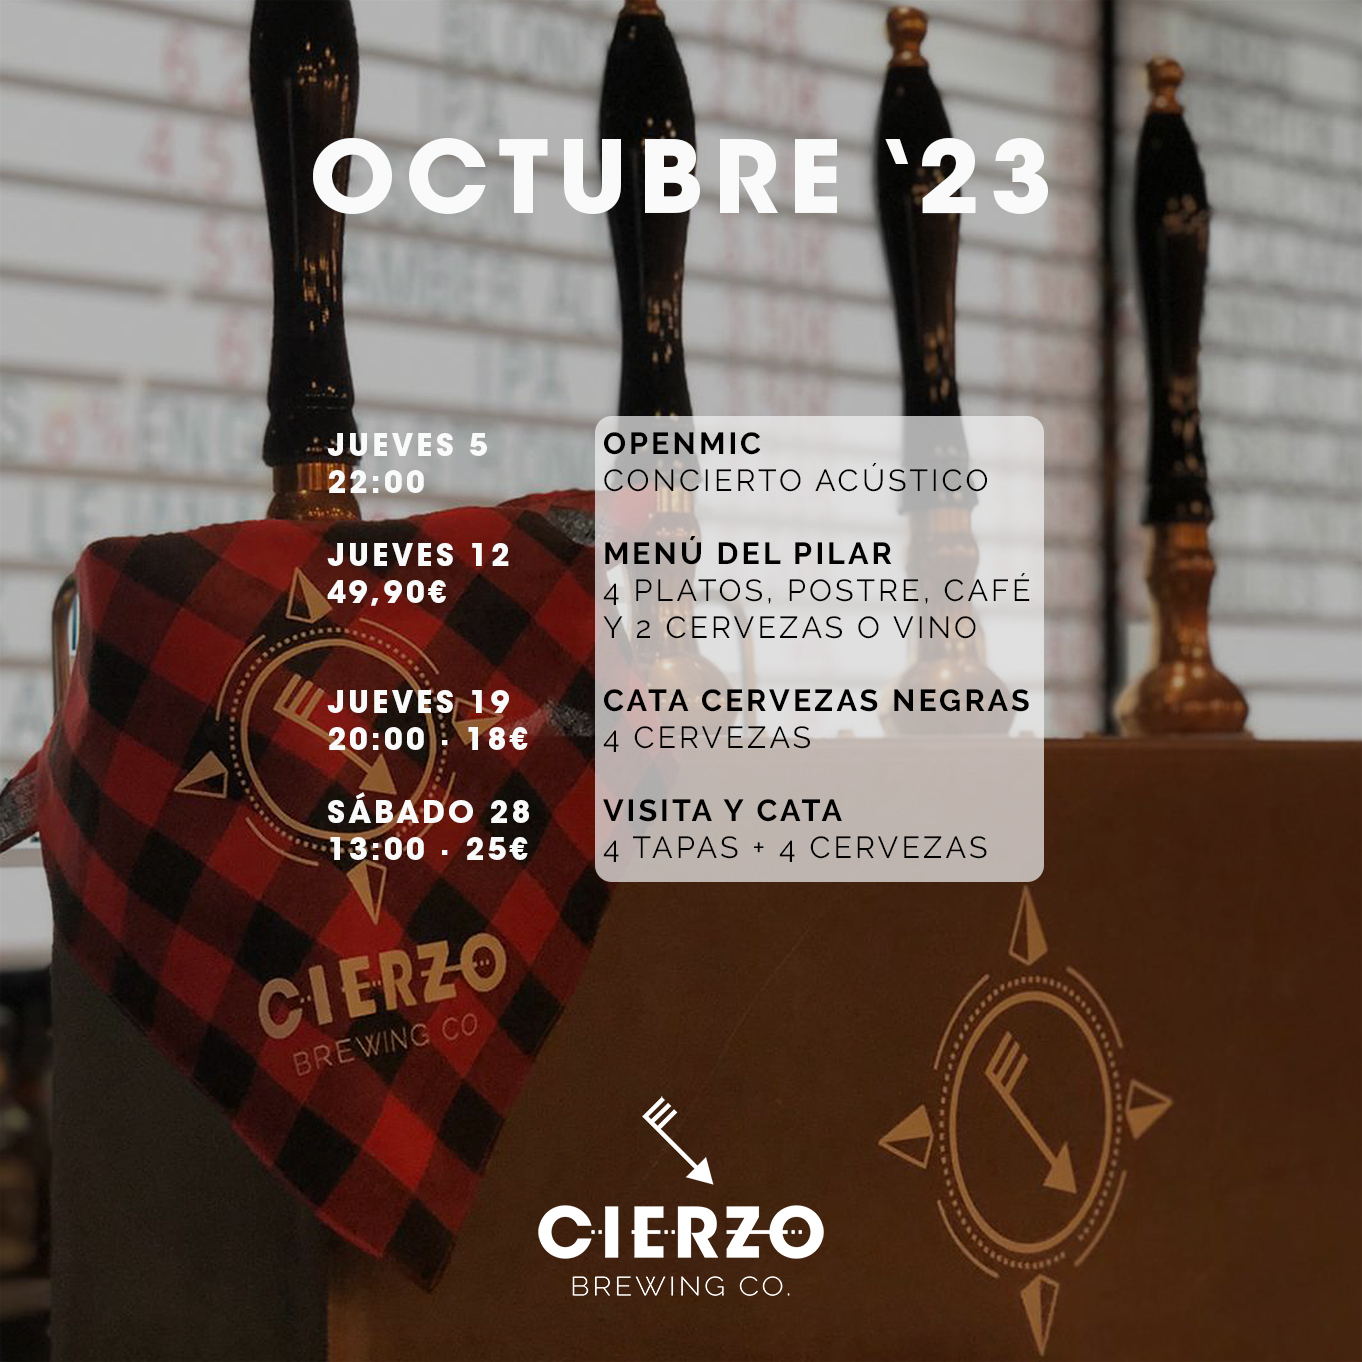 Catas de cerveza y otros eventos en octubre de 2023 en el brewpub de Cierzo en Zaragoza